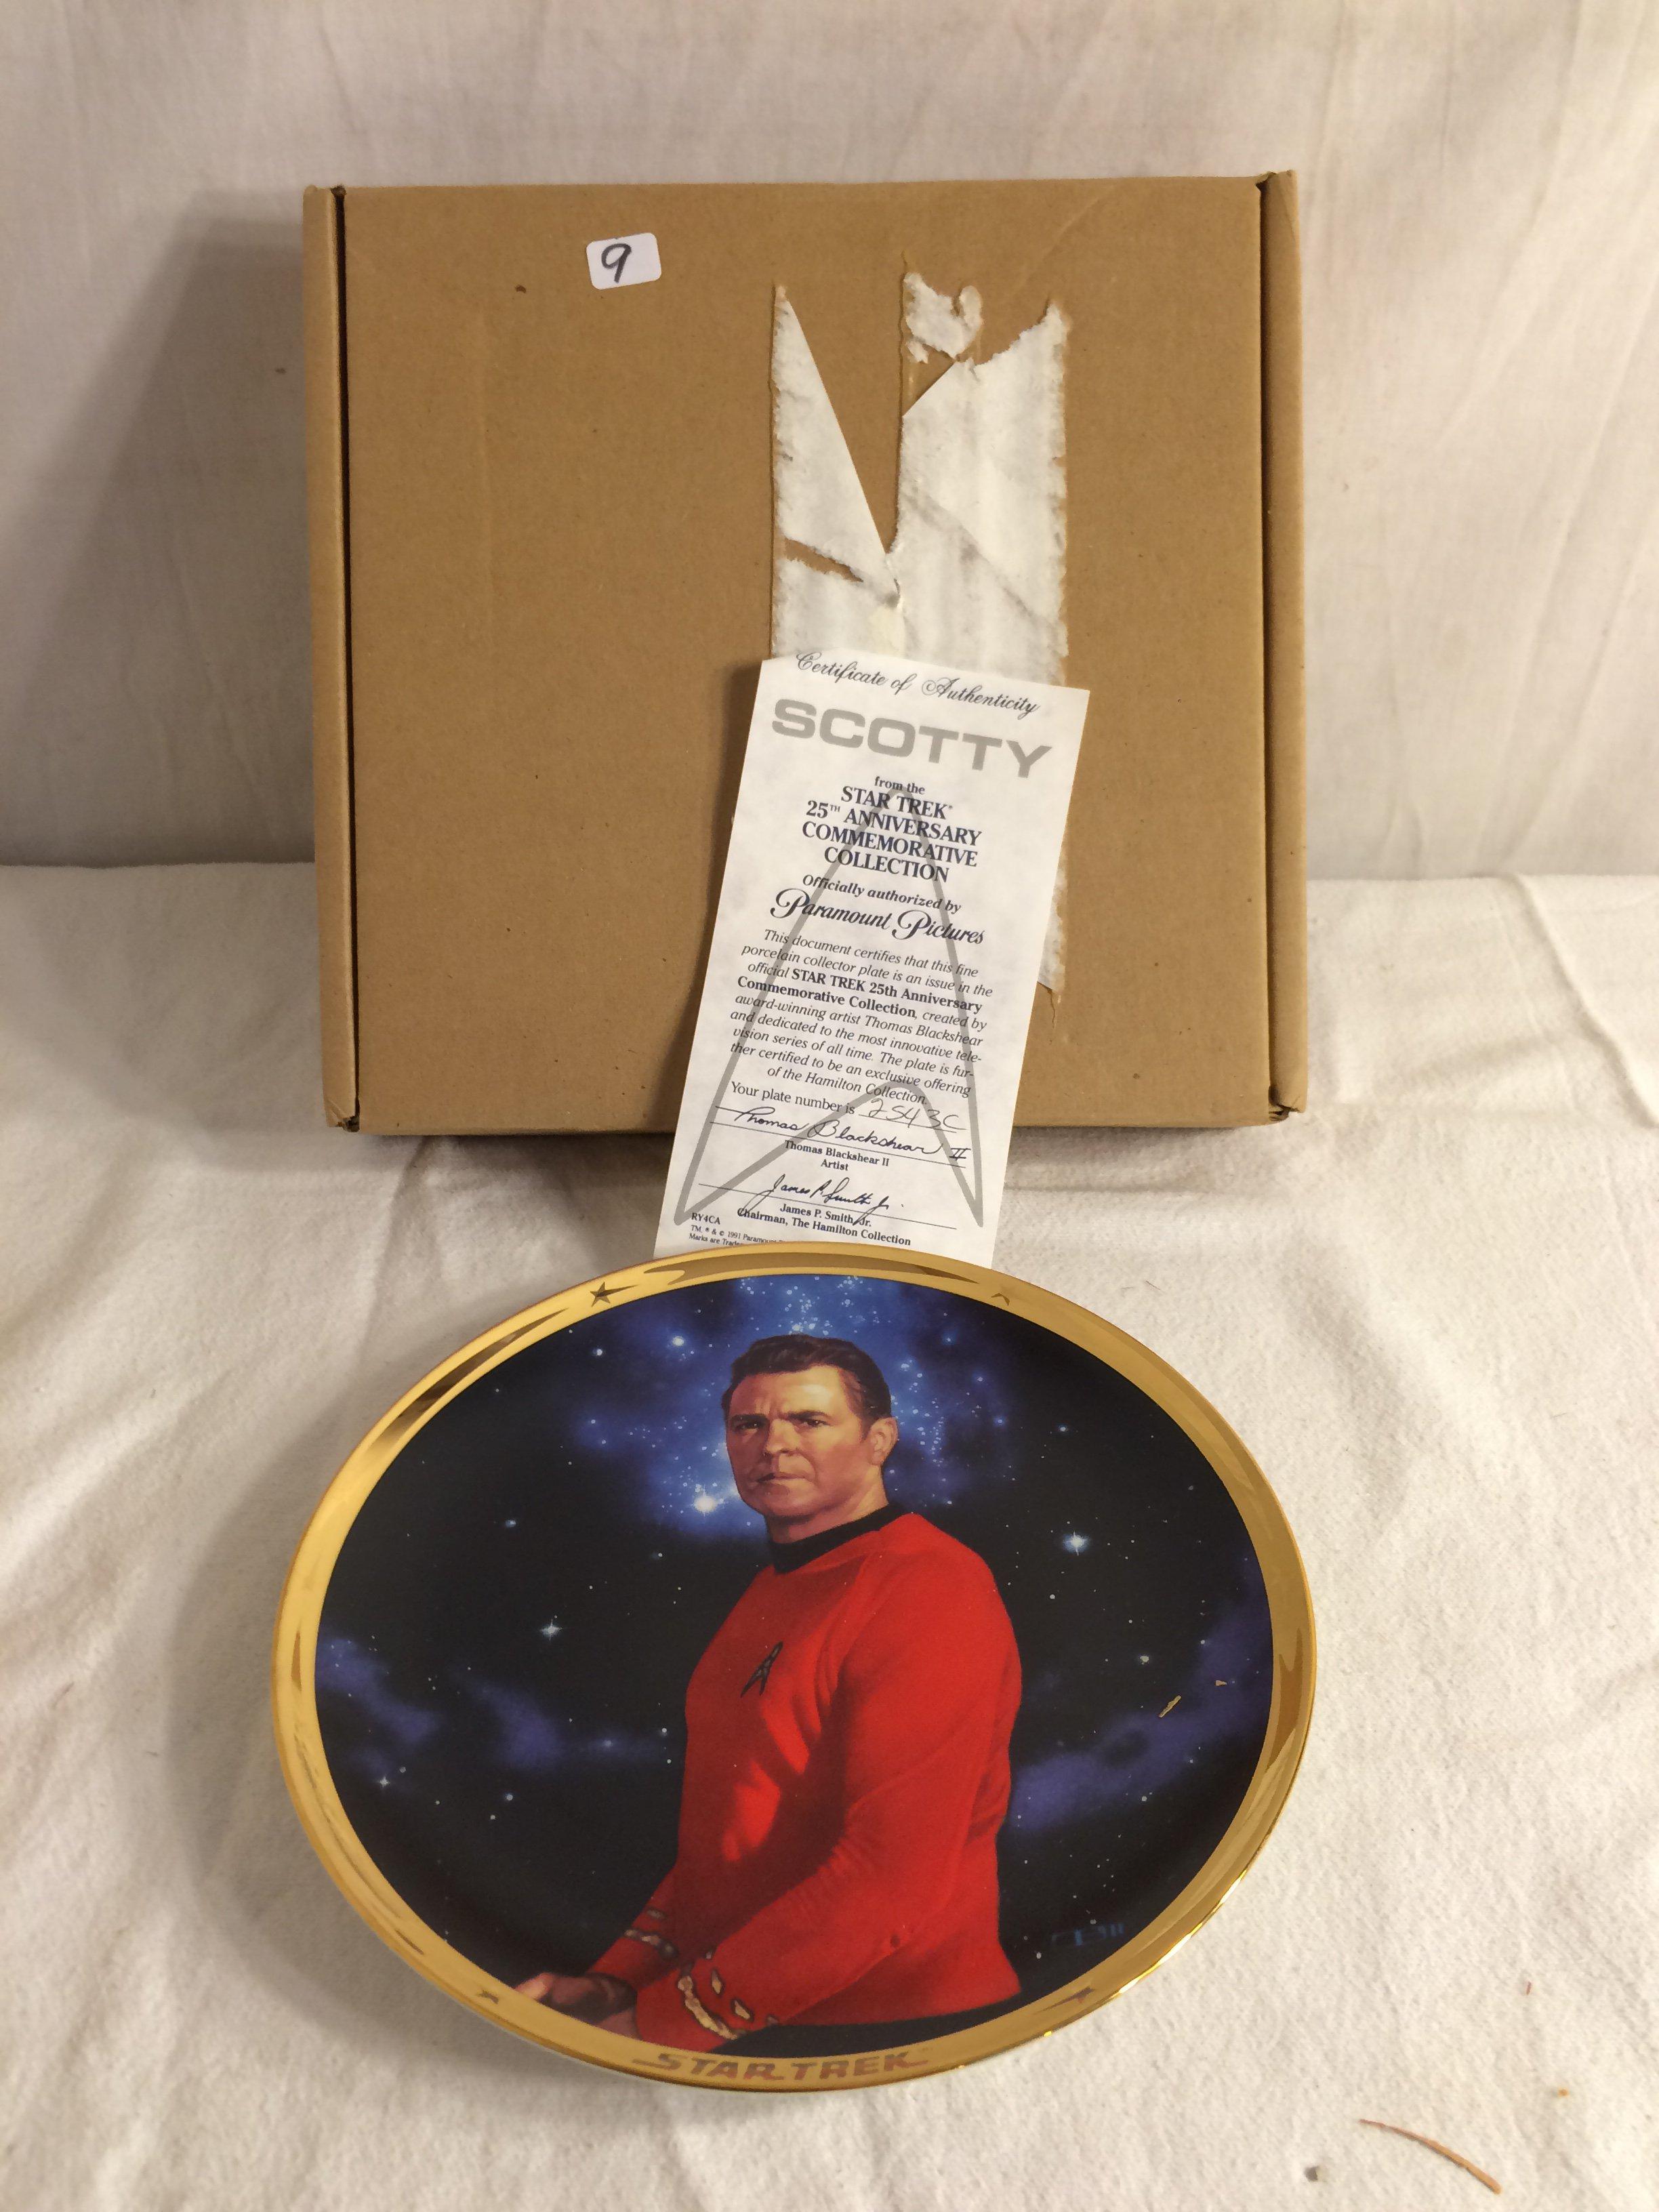 Collector Vintage 1991 Porcelain Plate Star Trek 25th Annv. Commemorative Plate  No.2543C Sz:8.5